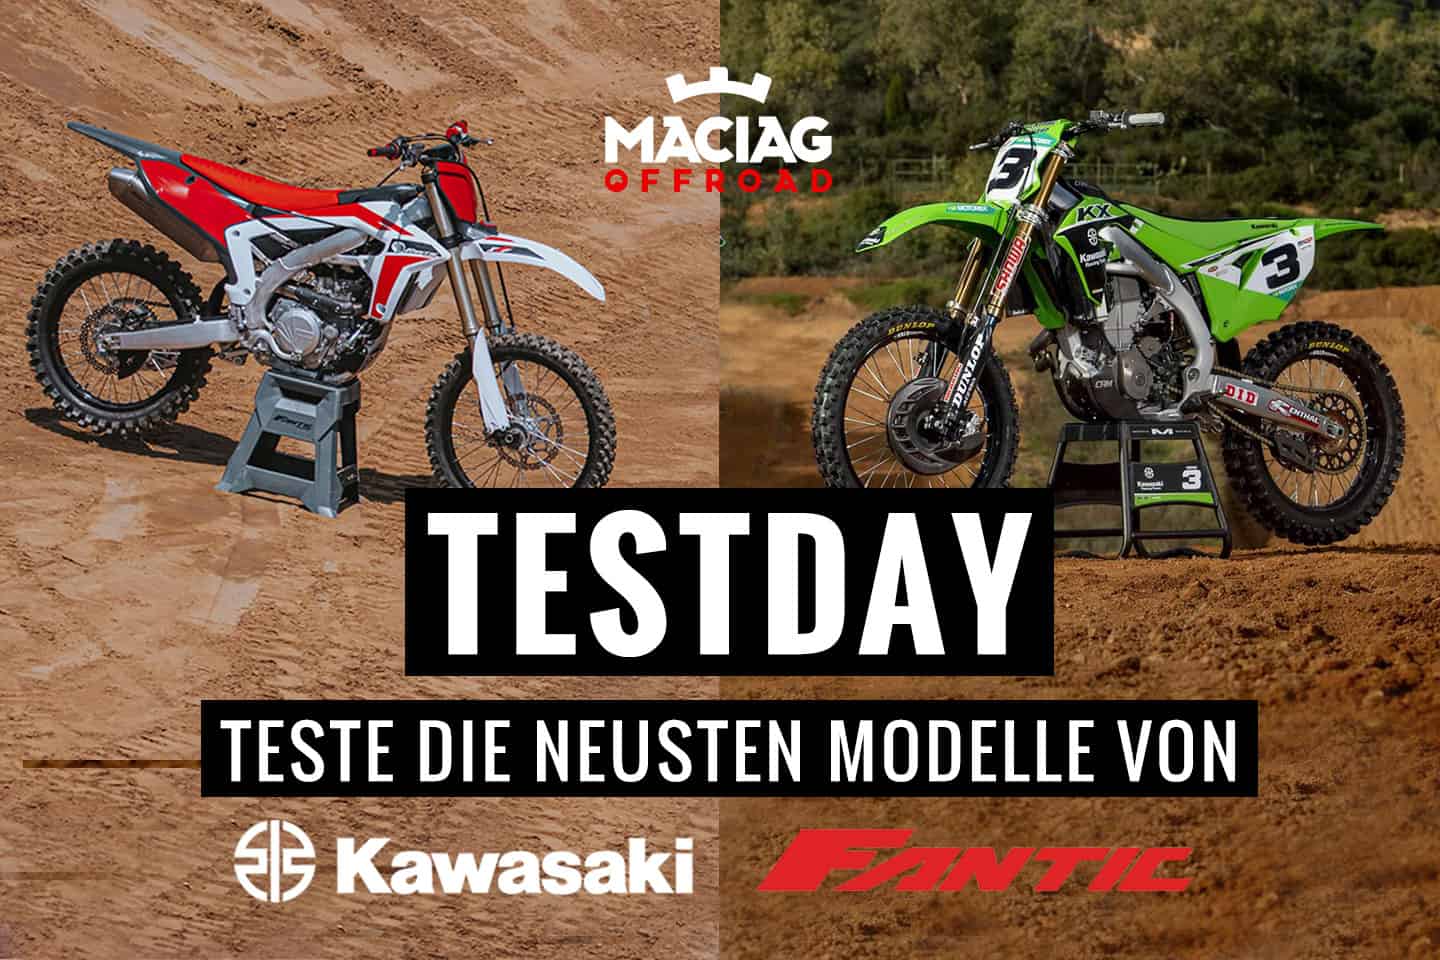 Teste die neusten Kawasaki- und Fantic-Modelle beim Maciag Offroad Testday!